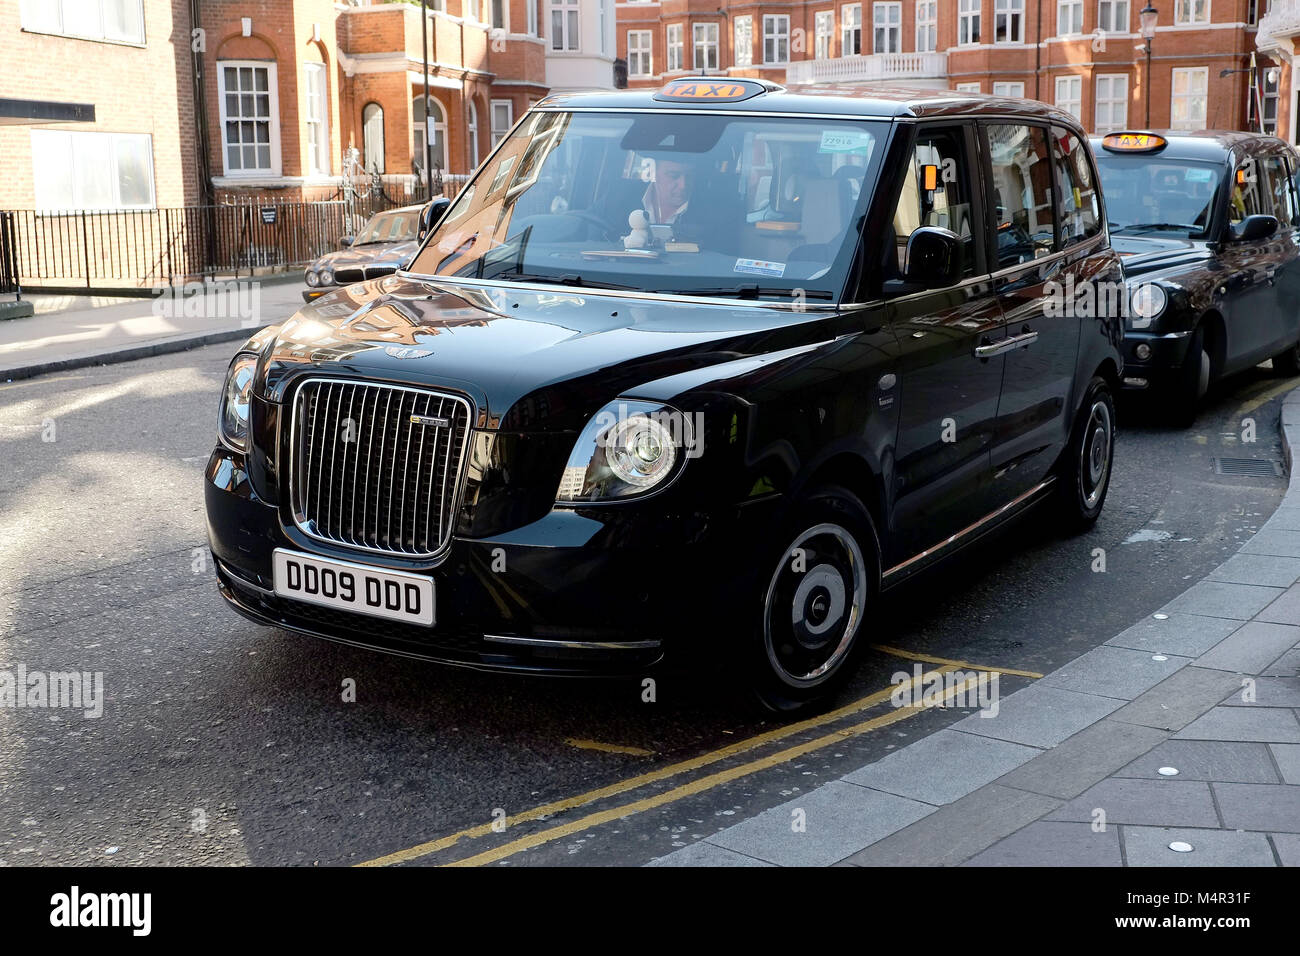 Cabine noirs de Londres a été vert comme un nouveau taxi électrique attend à l'extérieur Harrods à Knightsbridge de prendre des passagers sur les routes de la capitale. Banque D'Images